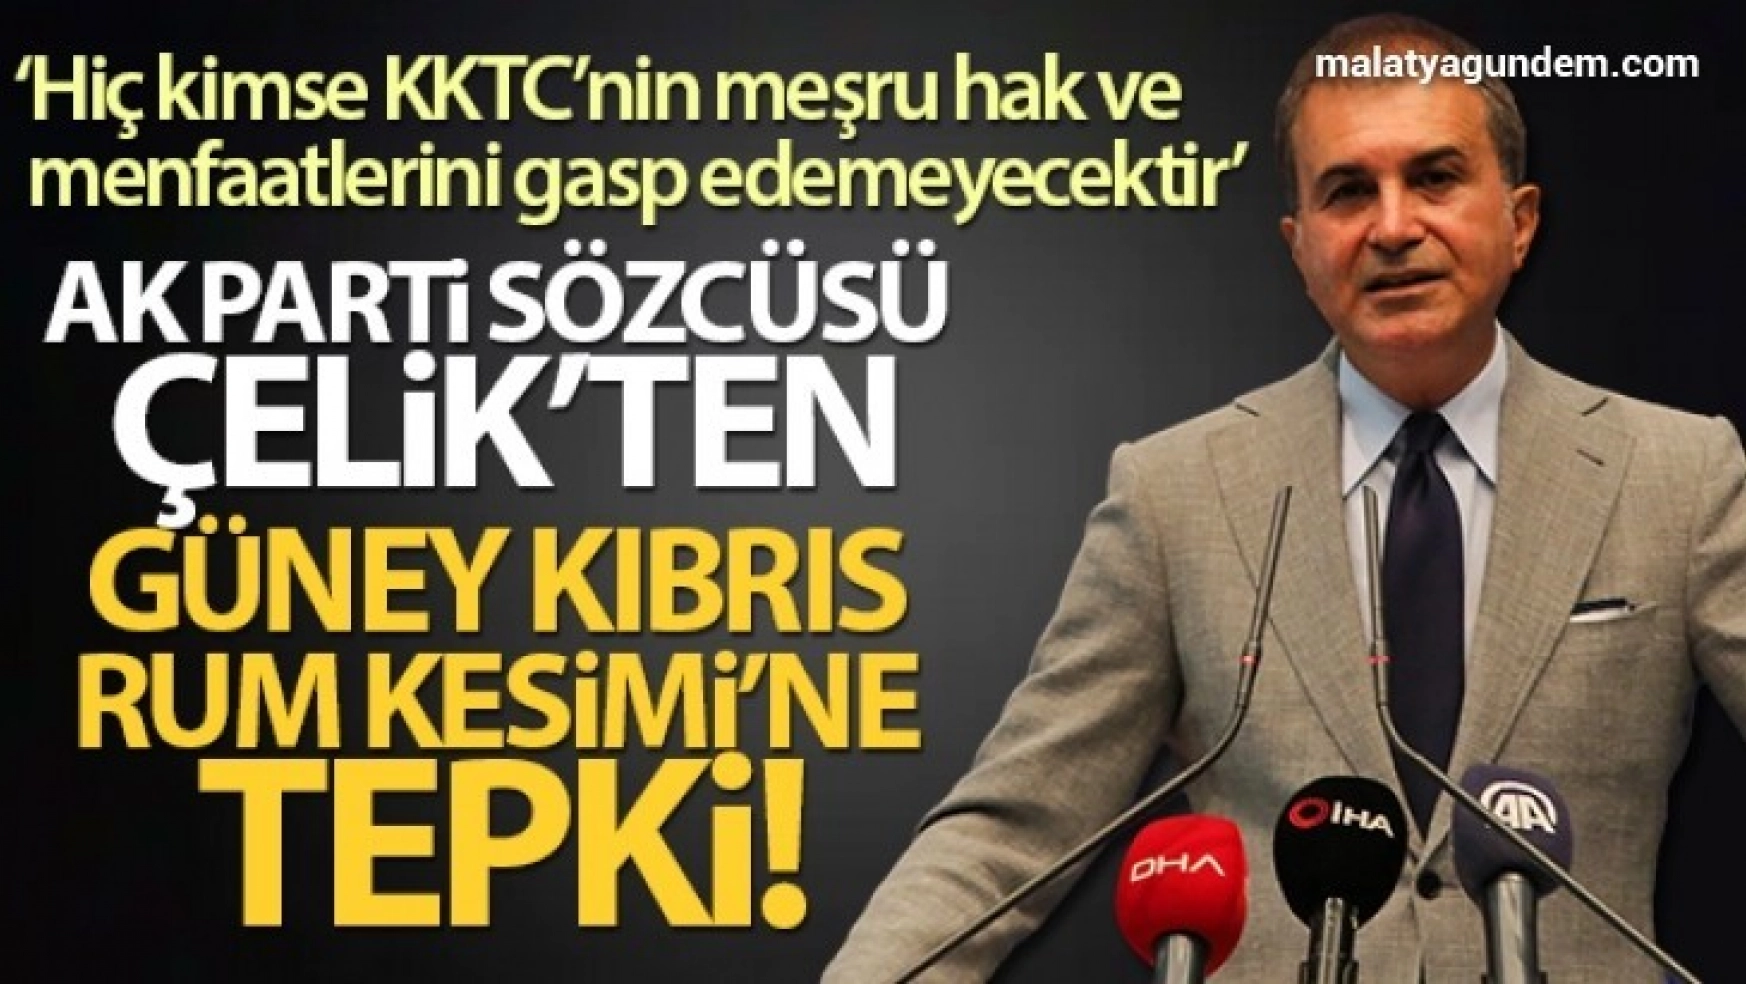 AK Parti Sözcüsü Çelik'ten Güney Kıbrıs Rum Kesimi'ne tepki